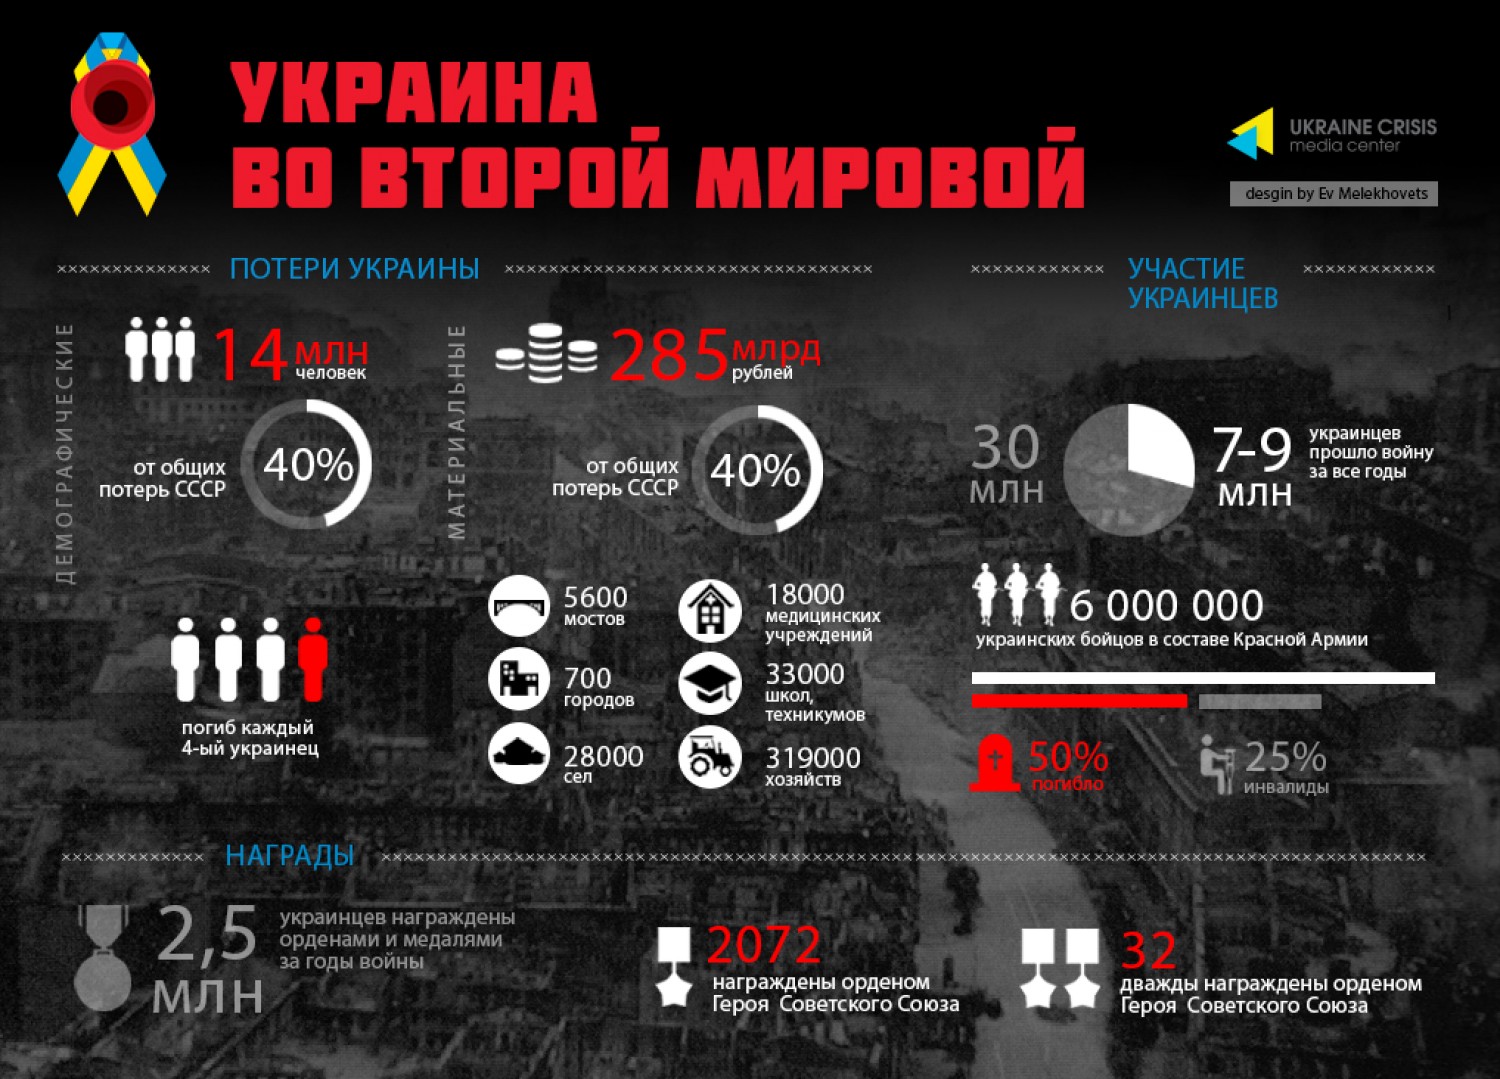 Сво статистика потерь. Инфографика потери во второй мировой войне. Украина во второй мировой войне.